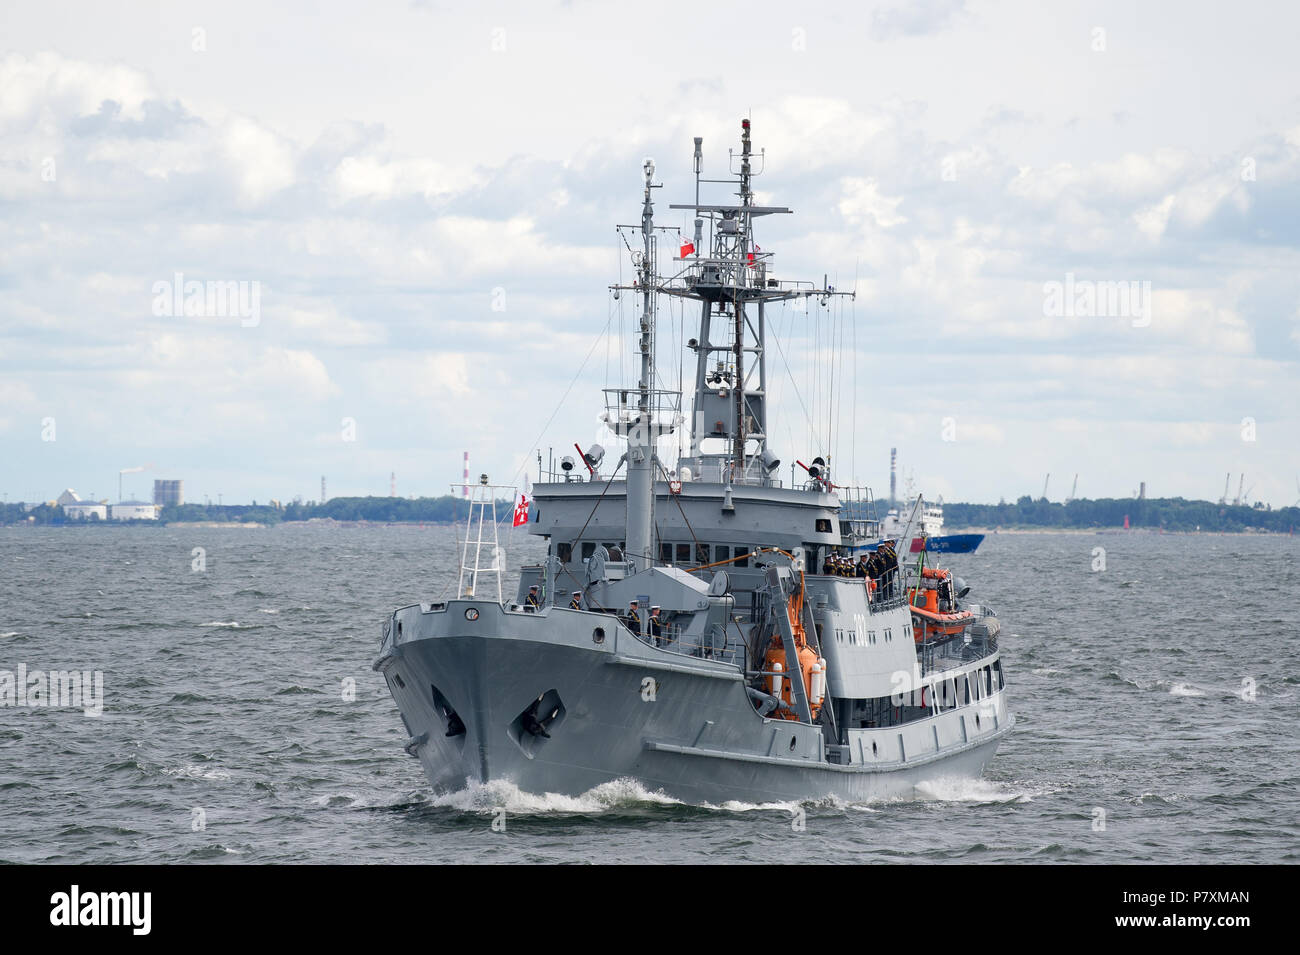 Polnische Piast-Klasse retten - bergen Schiff ORP Lech 282 während die Marine Parade 100 annversary der polnischen Marine in Gdynia, Polen zu feiern. 24. Juni 2018 Stockfoto